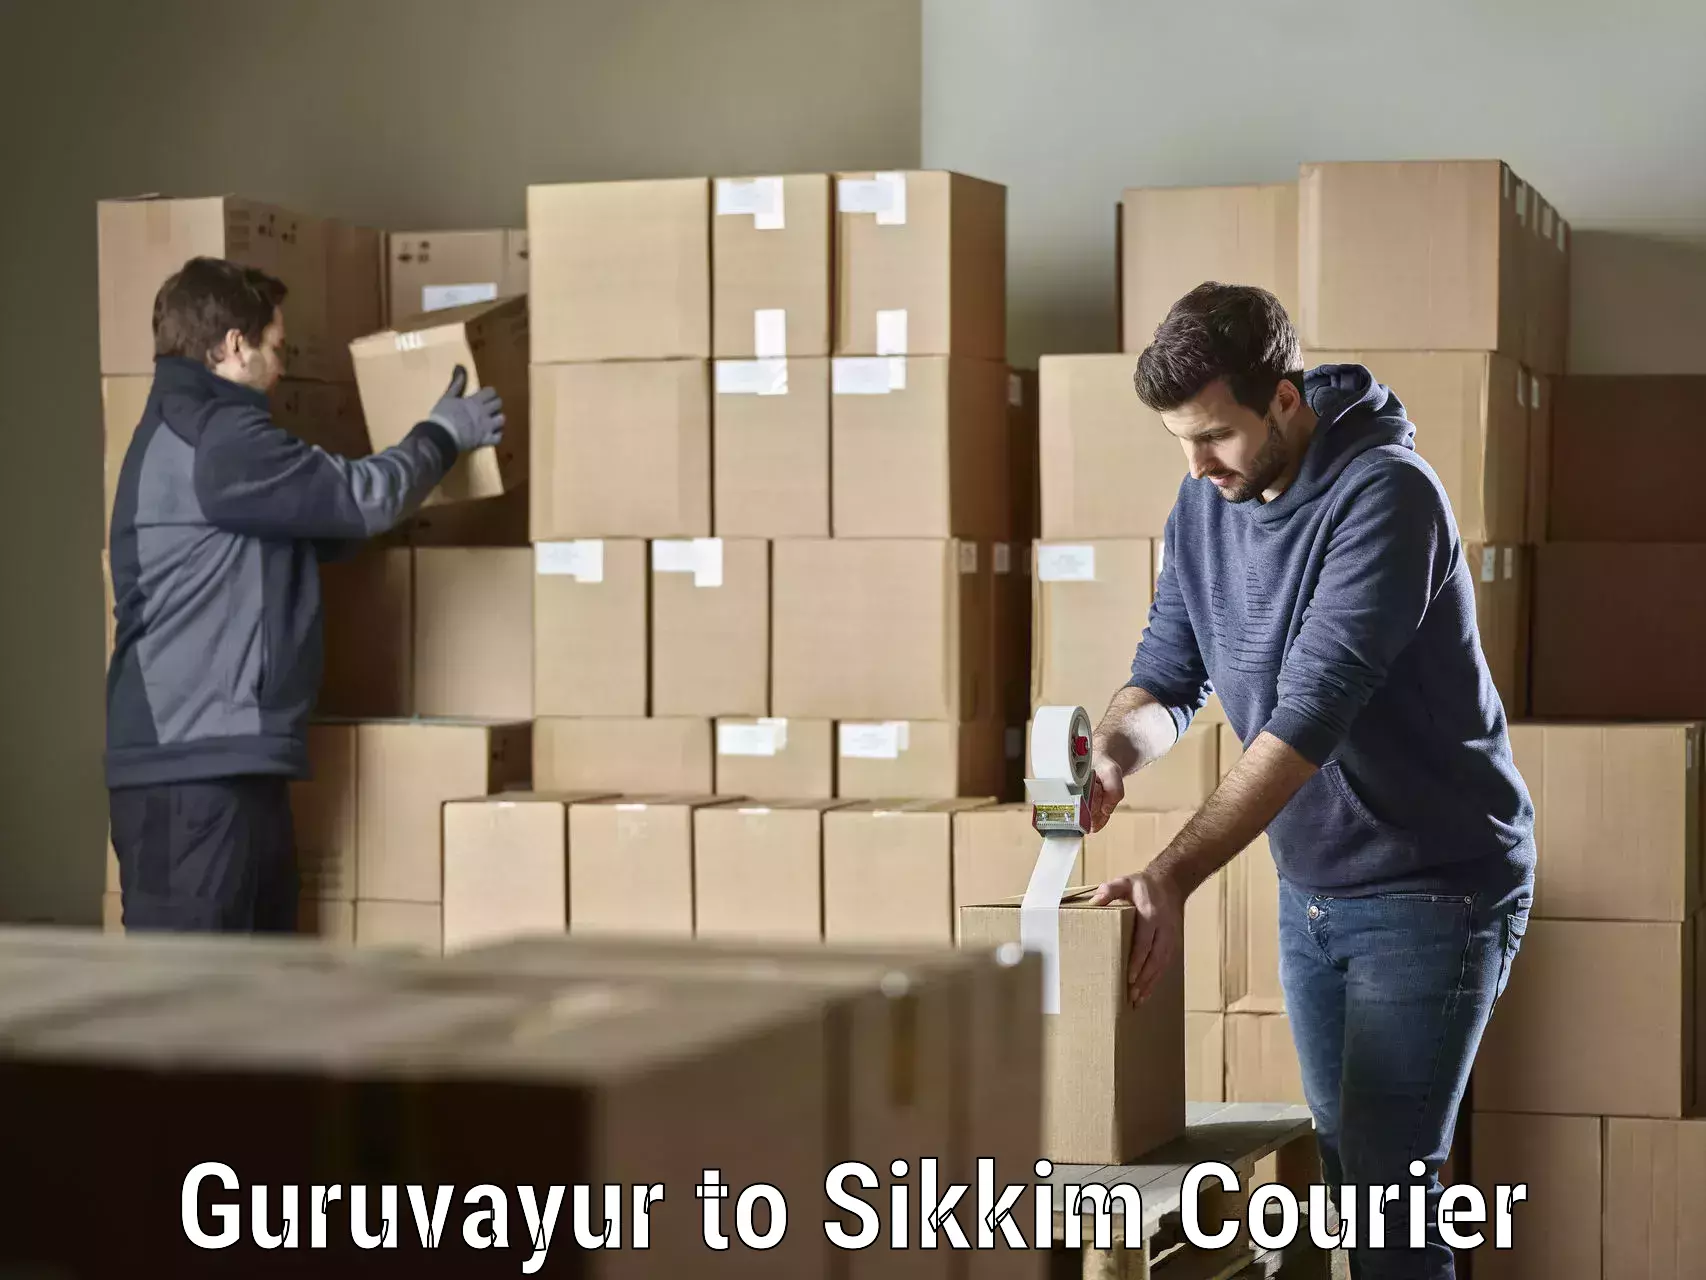 Customer-focused courier Guruvayur to Sikkim